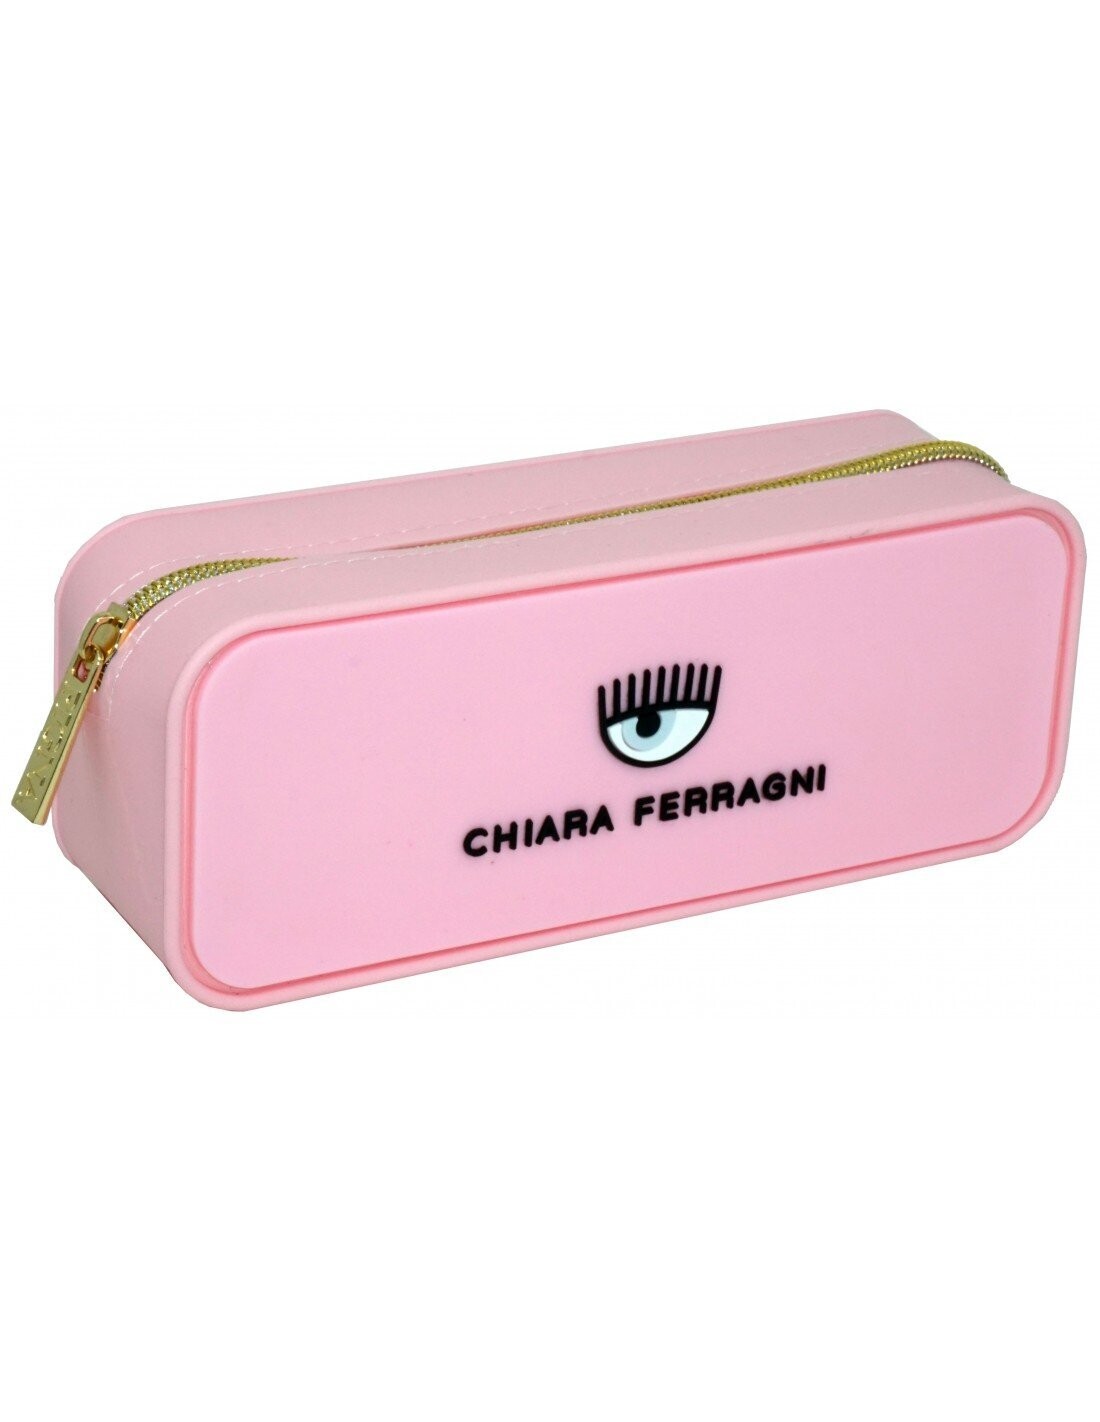 Chiara Ferragni Astuccio Limited Edition - Rosa